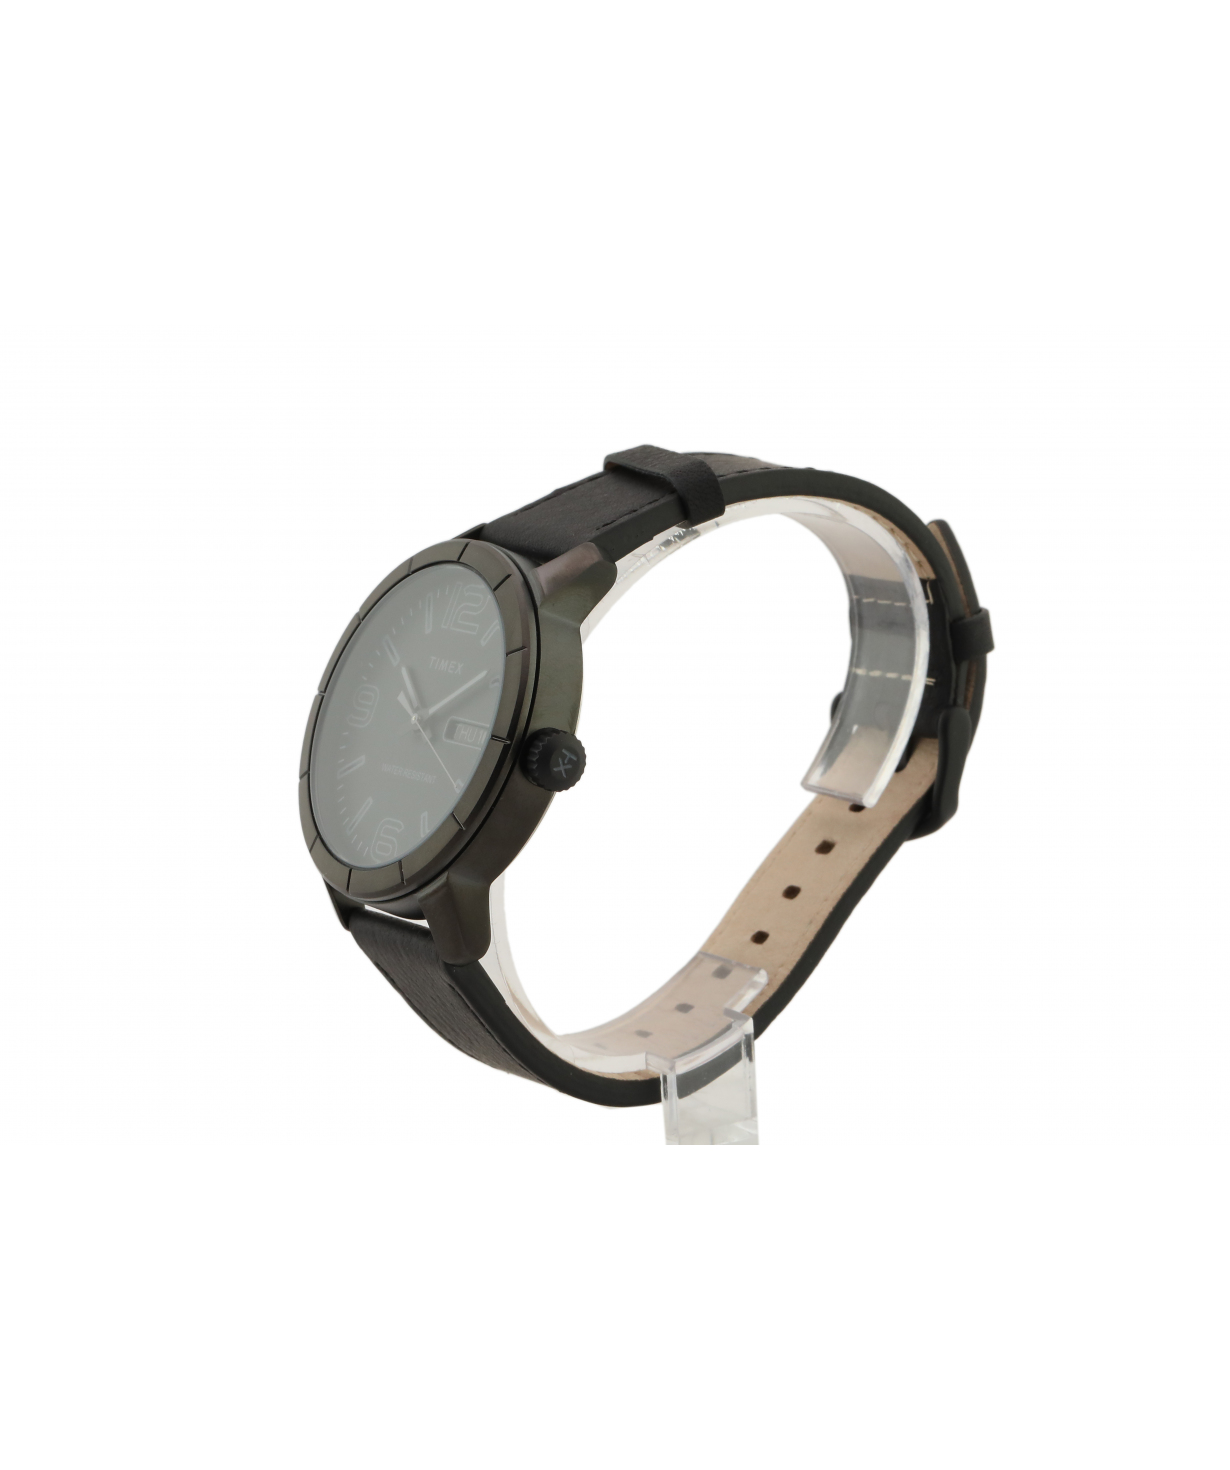 Наручные часы `Timex` TW2R64300